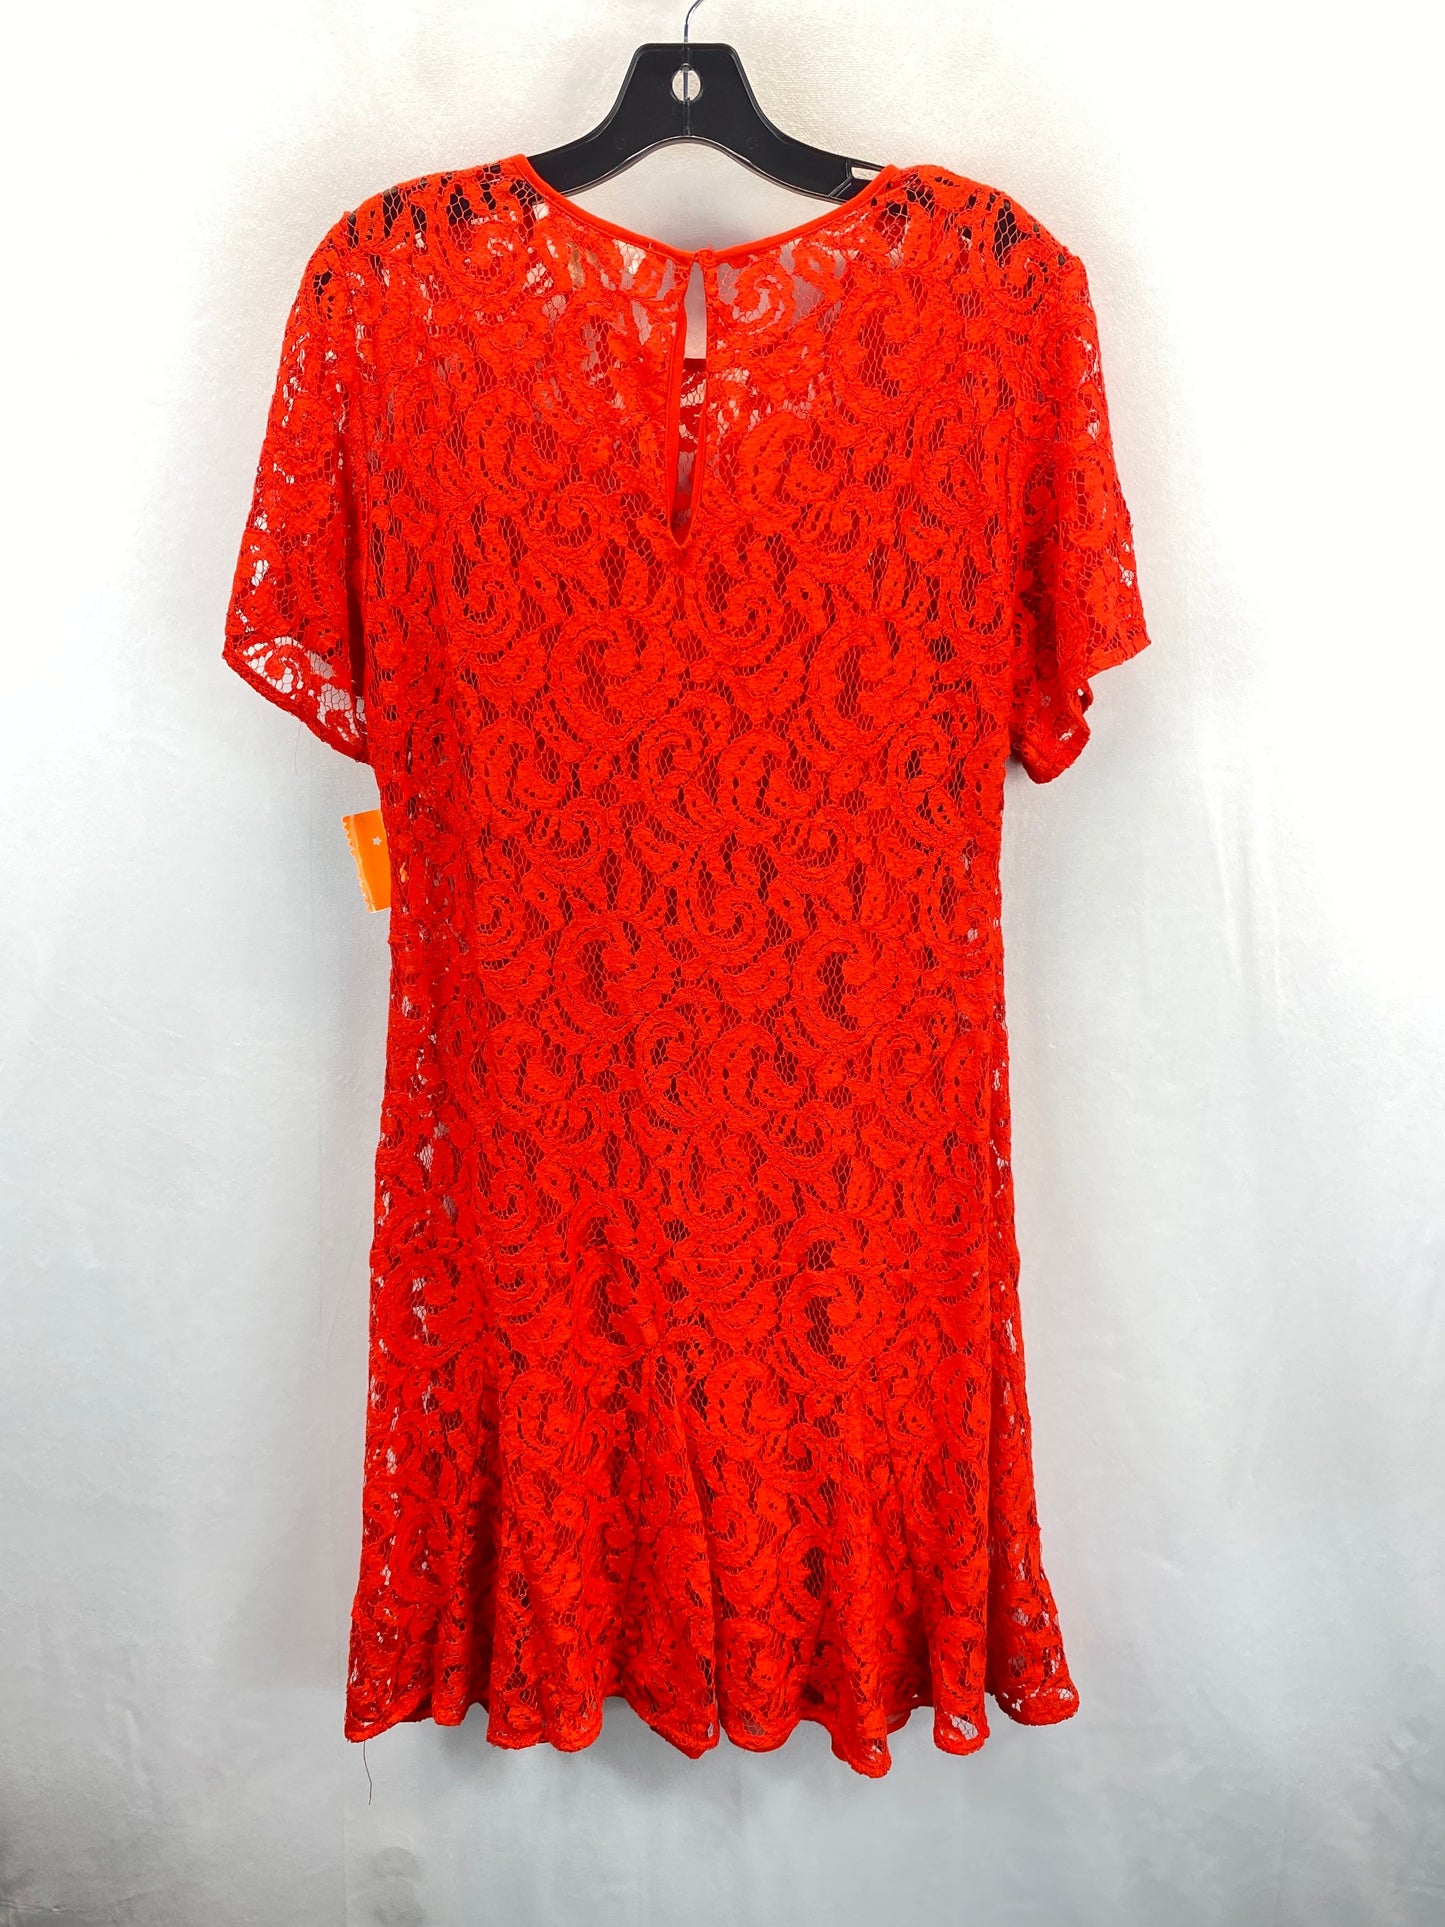 Red Dress Designer Michael Kors, Size L